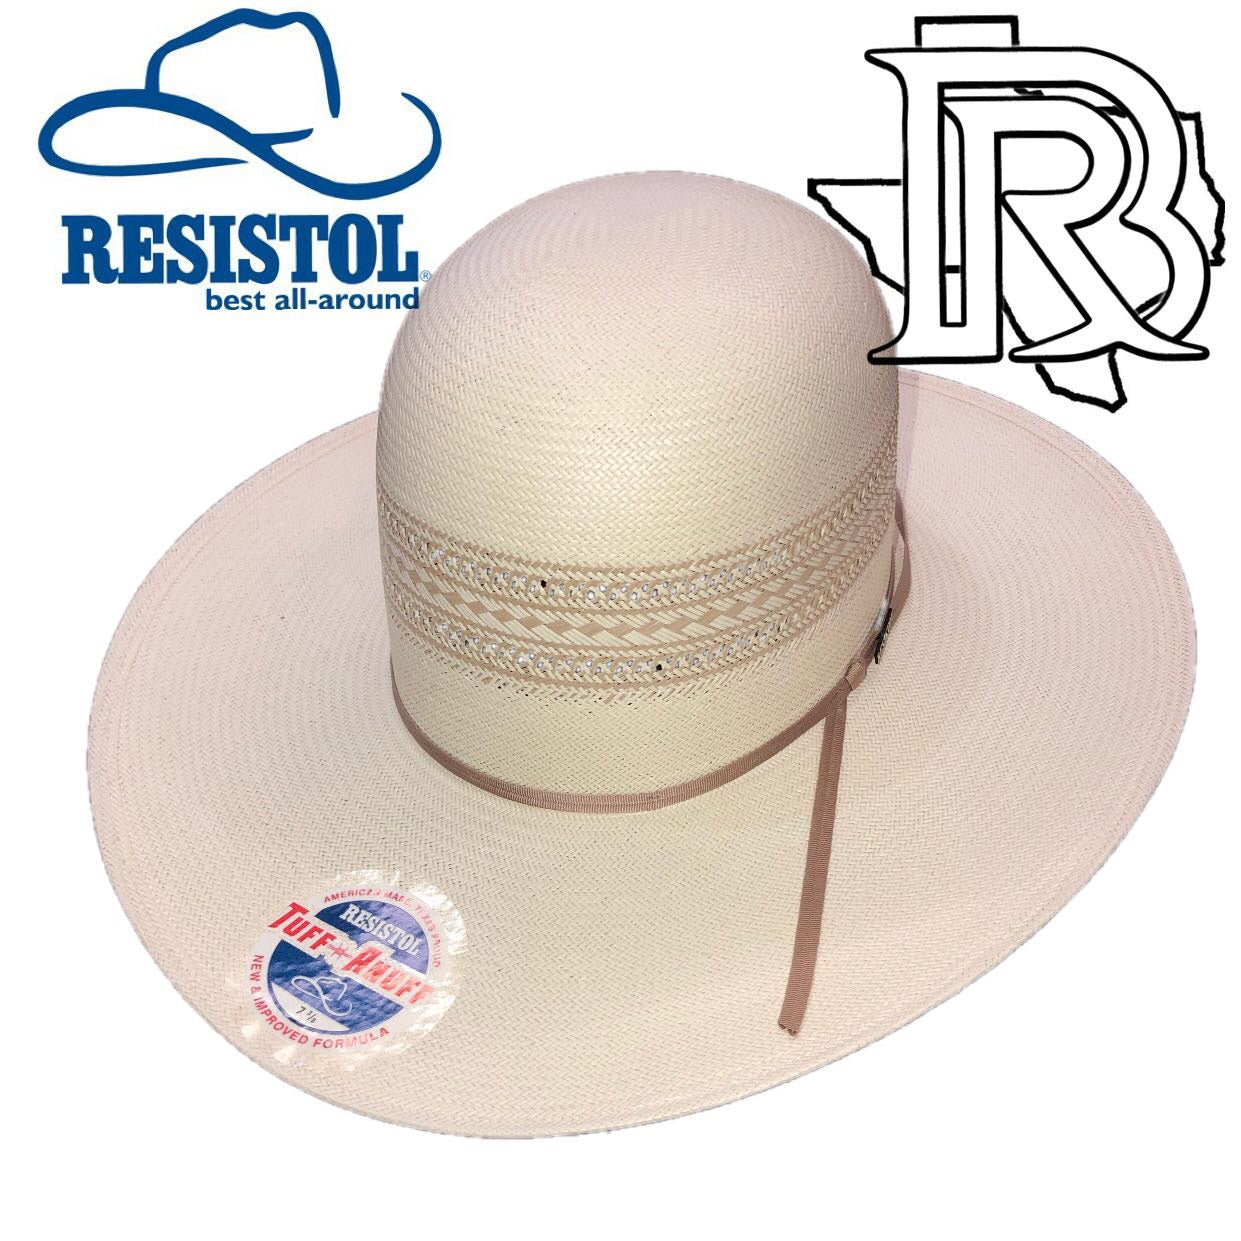 RESISTOL POINT RIDER: Straw Hat 4 1/4